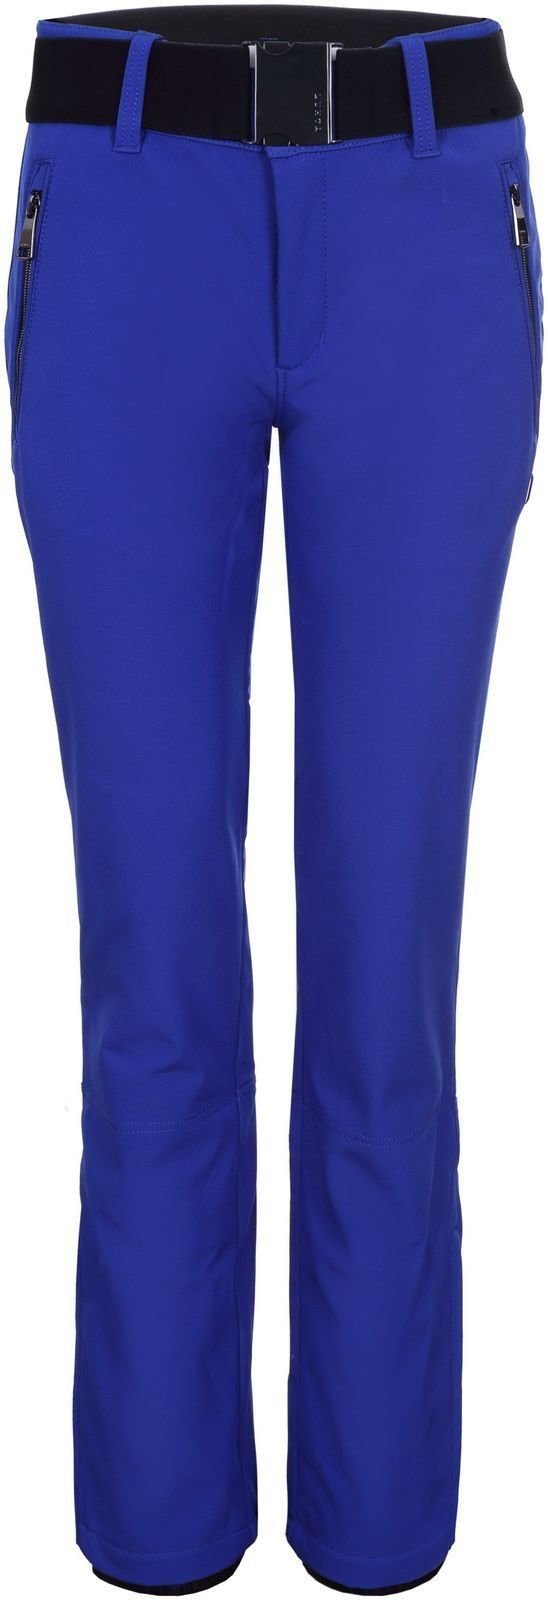 Sínadrág Luhta Joentaus Womens Ski Pants Royal Blue 36